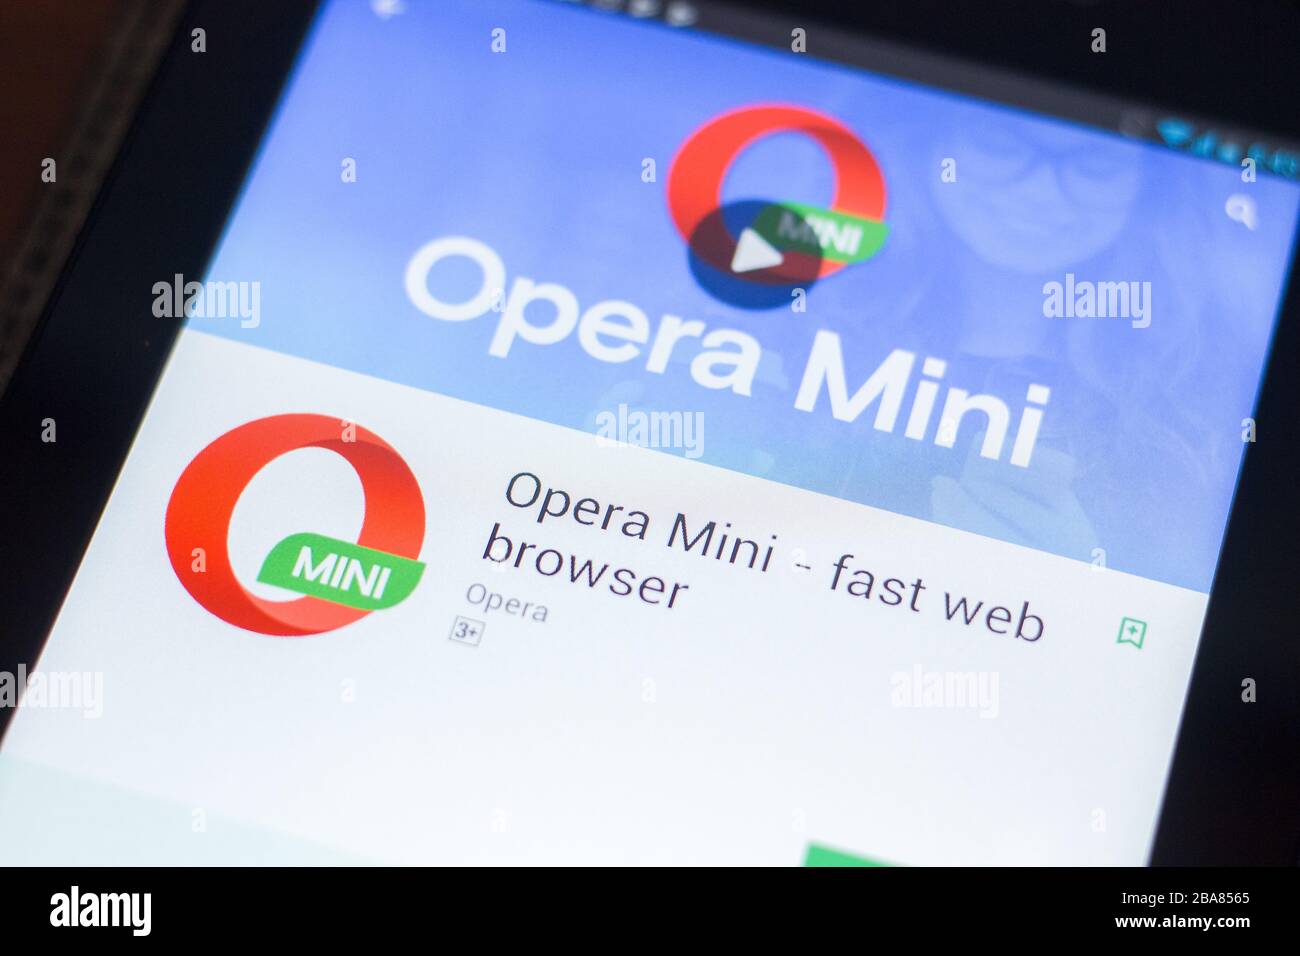 Mini opera Opera Mini